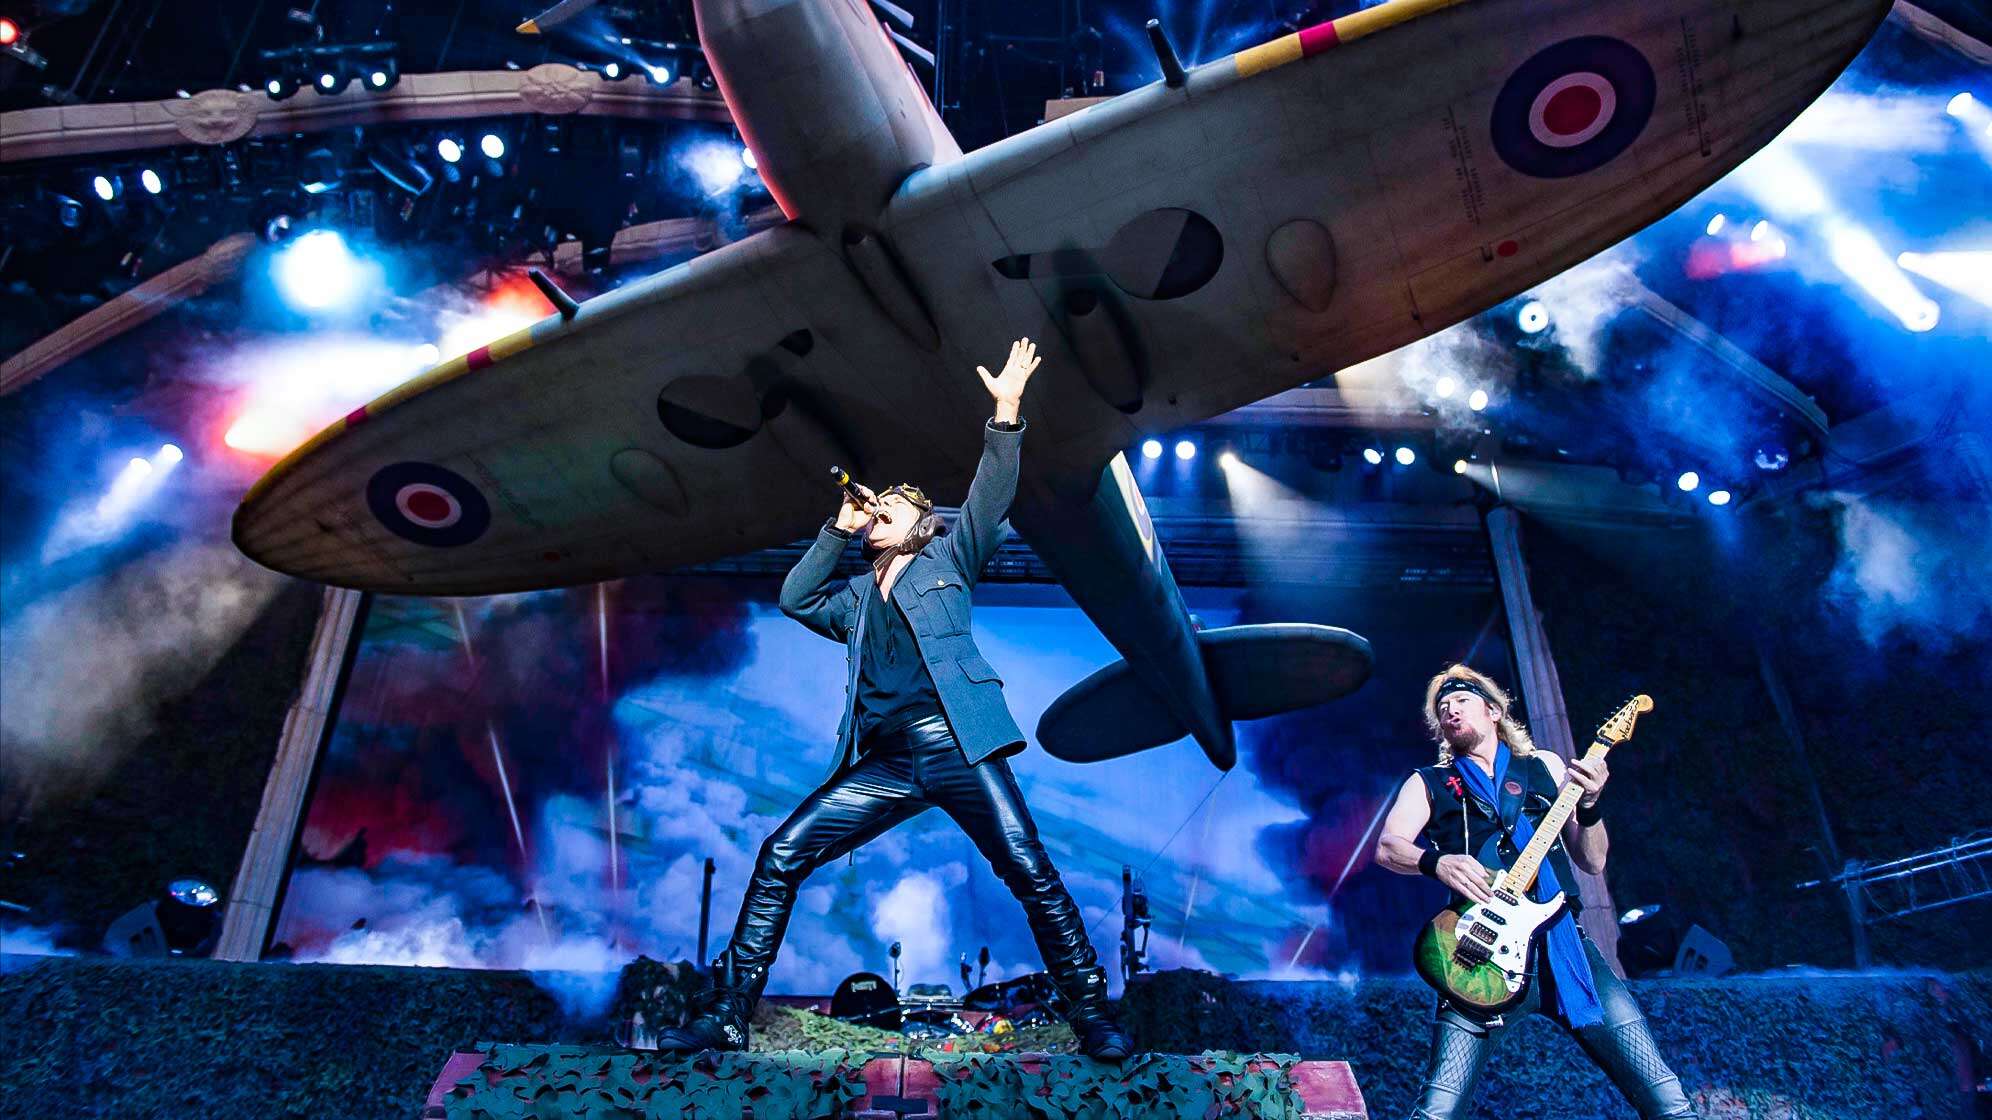 Sänger Bruce Dickinson und Gitarrist Adrian Smith auf der Bühne von Iron Maiden - über ihnen schwebt ein großes Militärflugzeug.